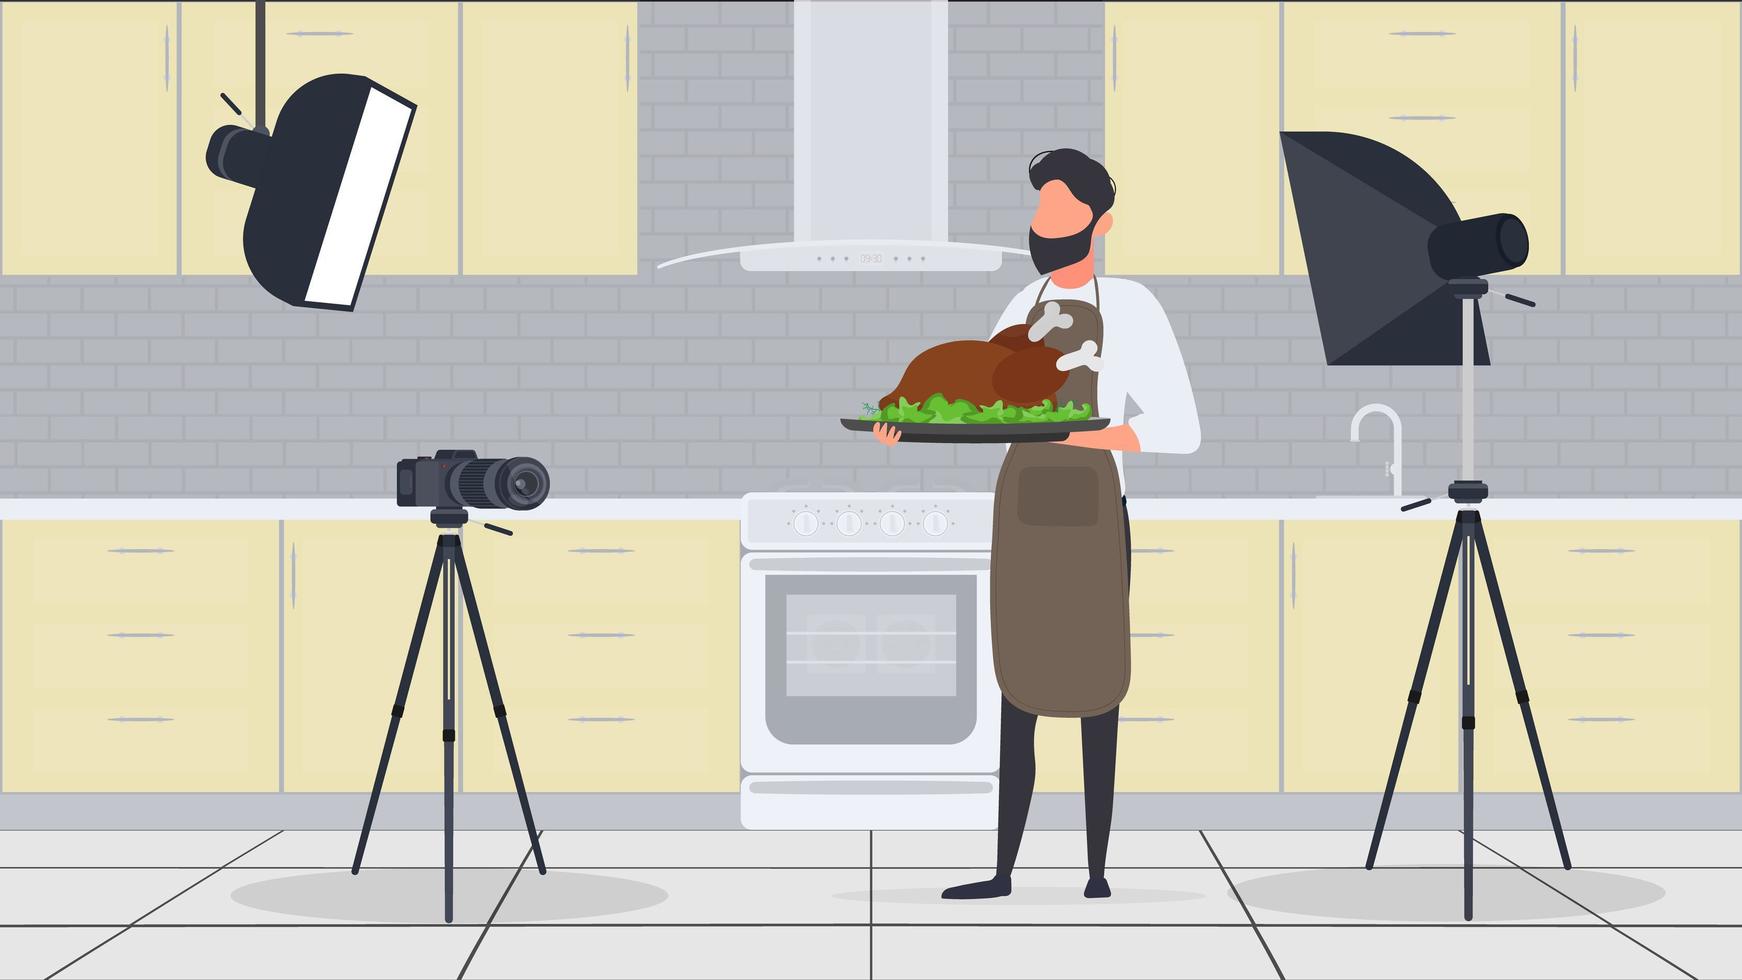 en manlig kock i köket har en kulinarisk blogg. killen i köksförklädet håller i sig stekt kyckling. vektor. vektor